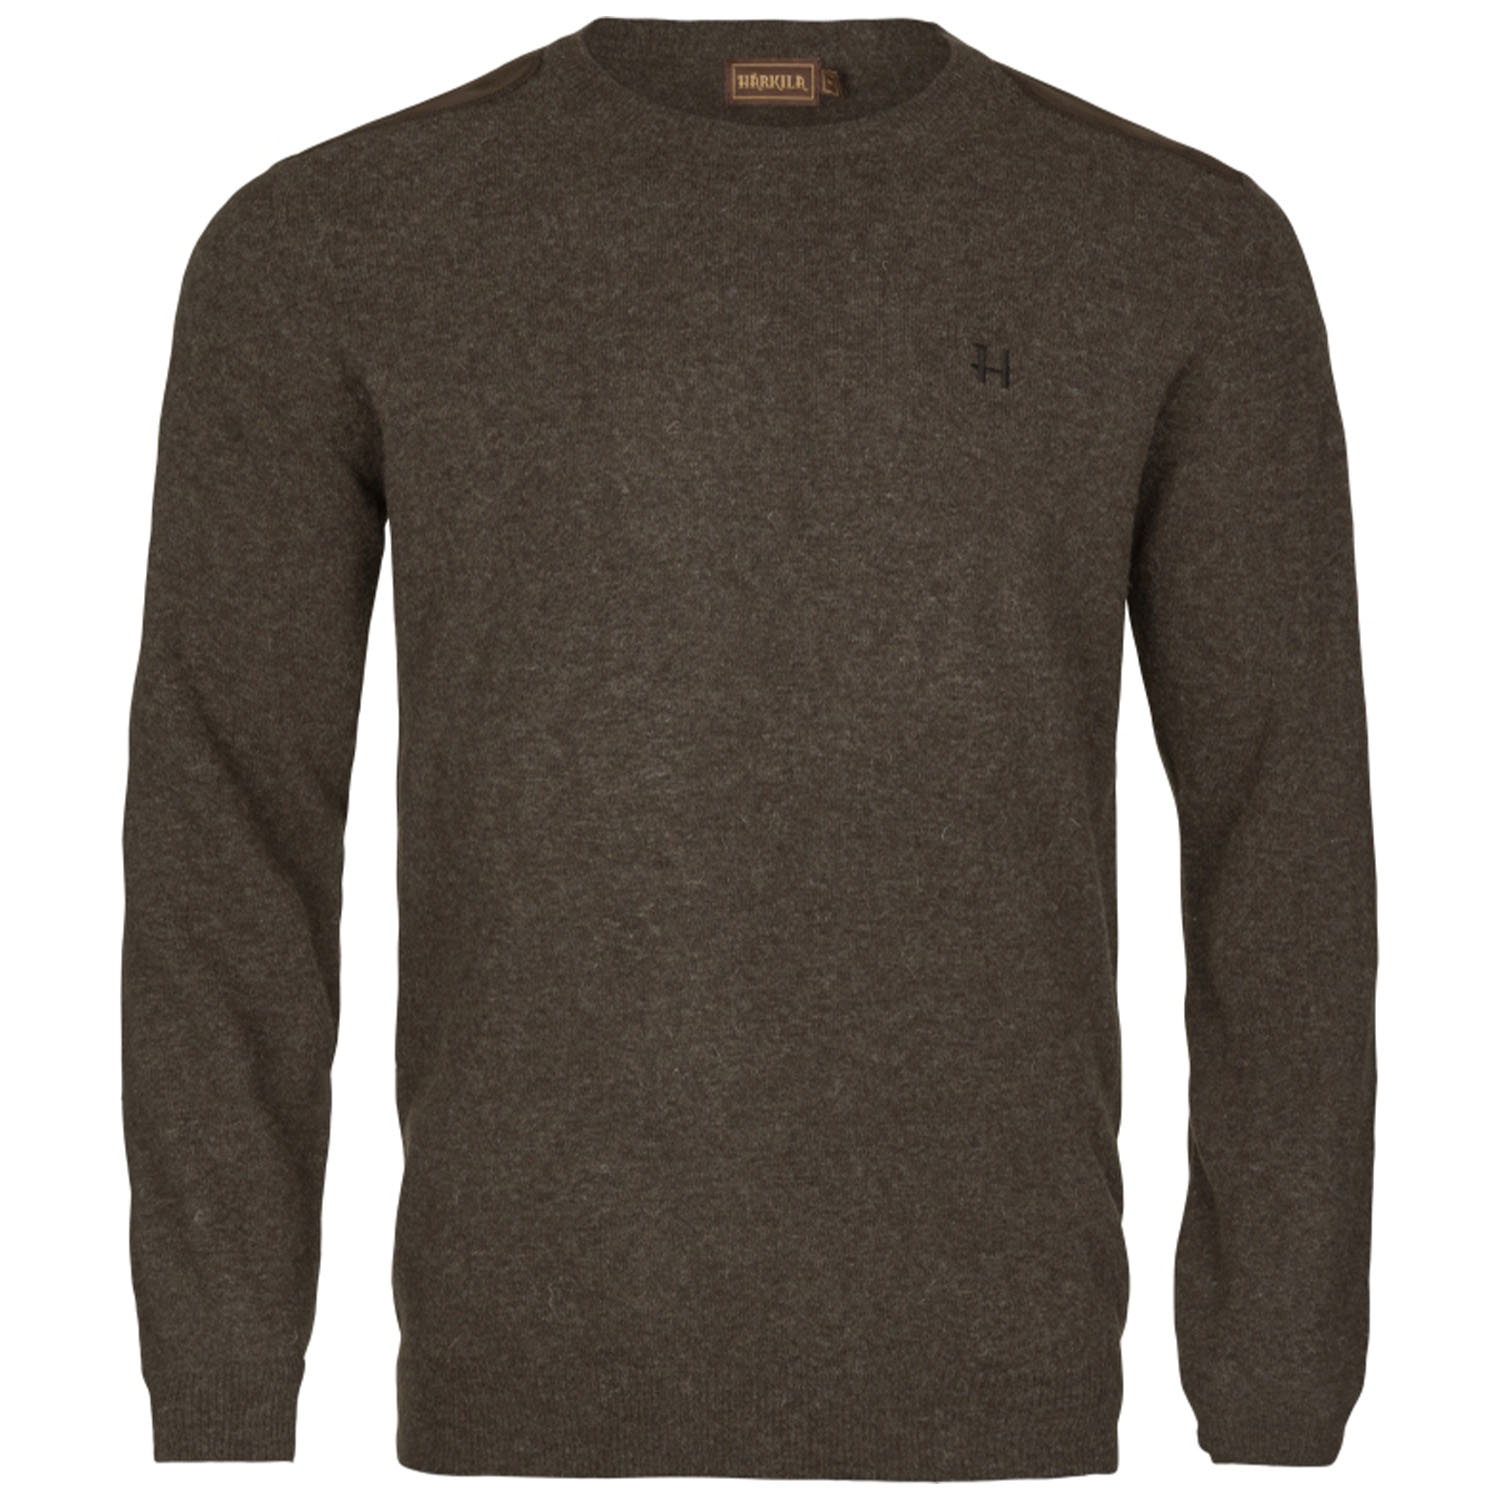 Härkila pullover arran (slate brown) - Winter Hunting Clothing